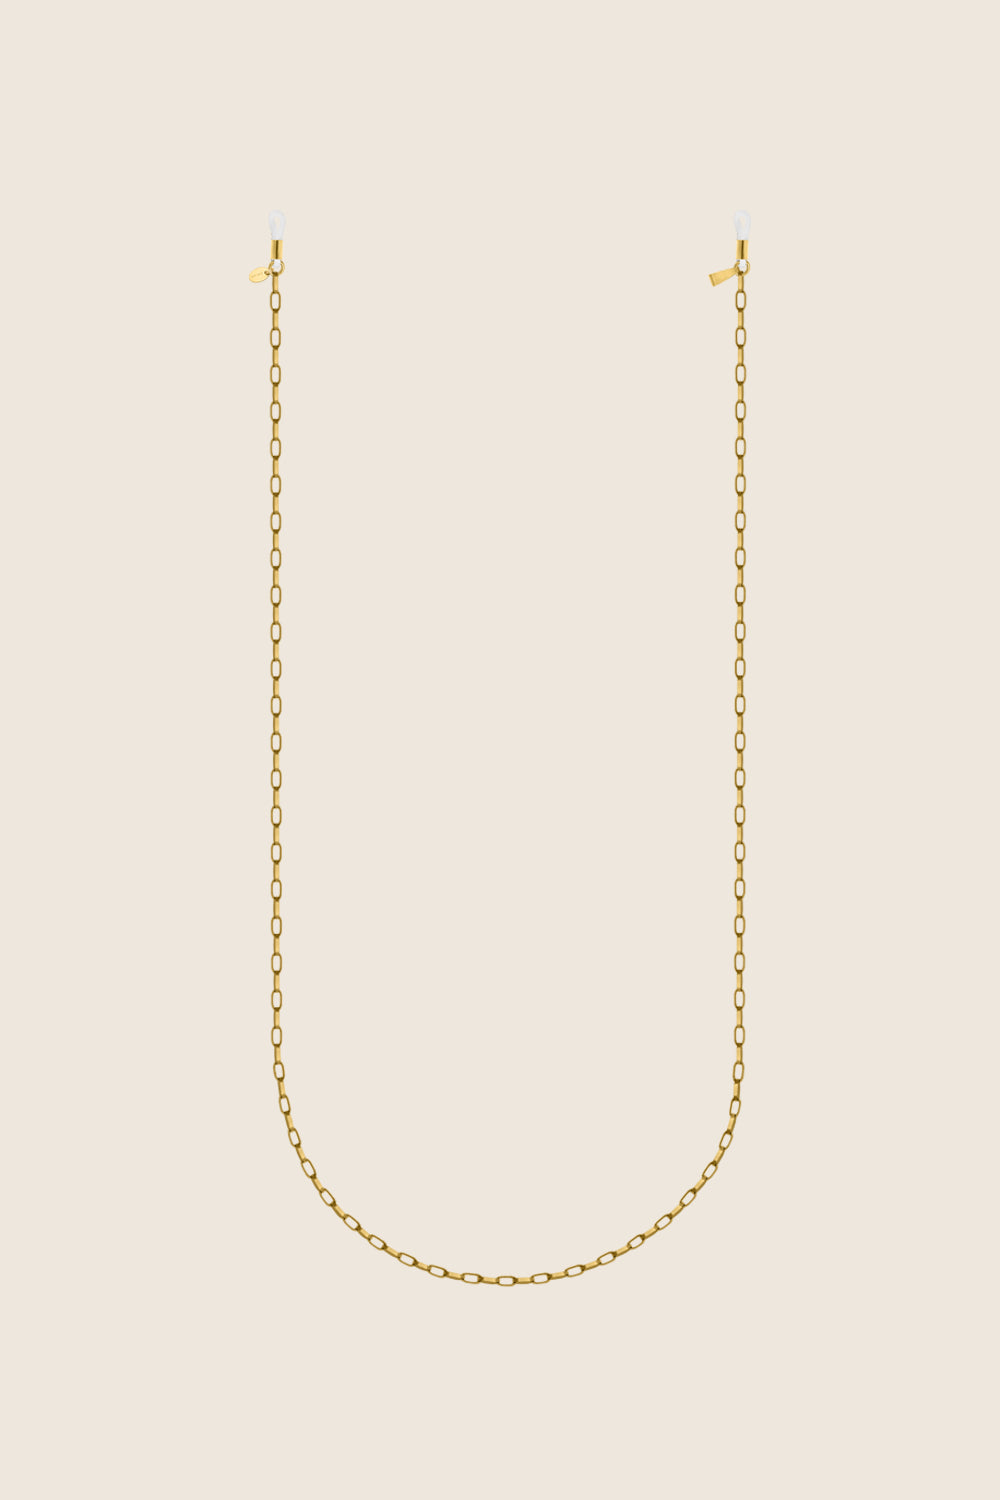 łańcuszek do okularów ze złoconego srebra 925 LENS I polska biżuteria UMIAR